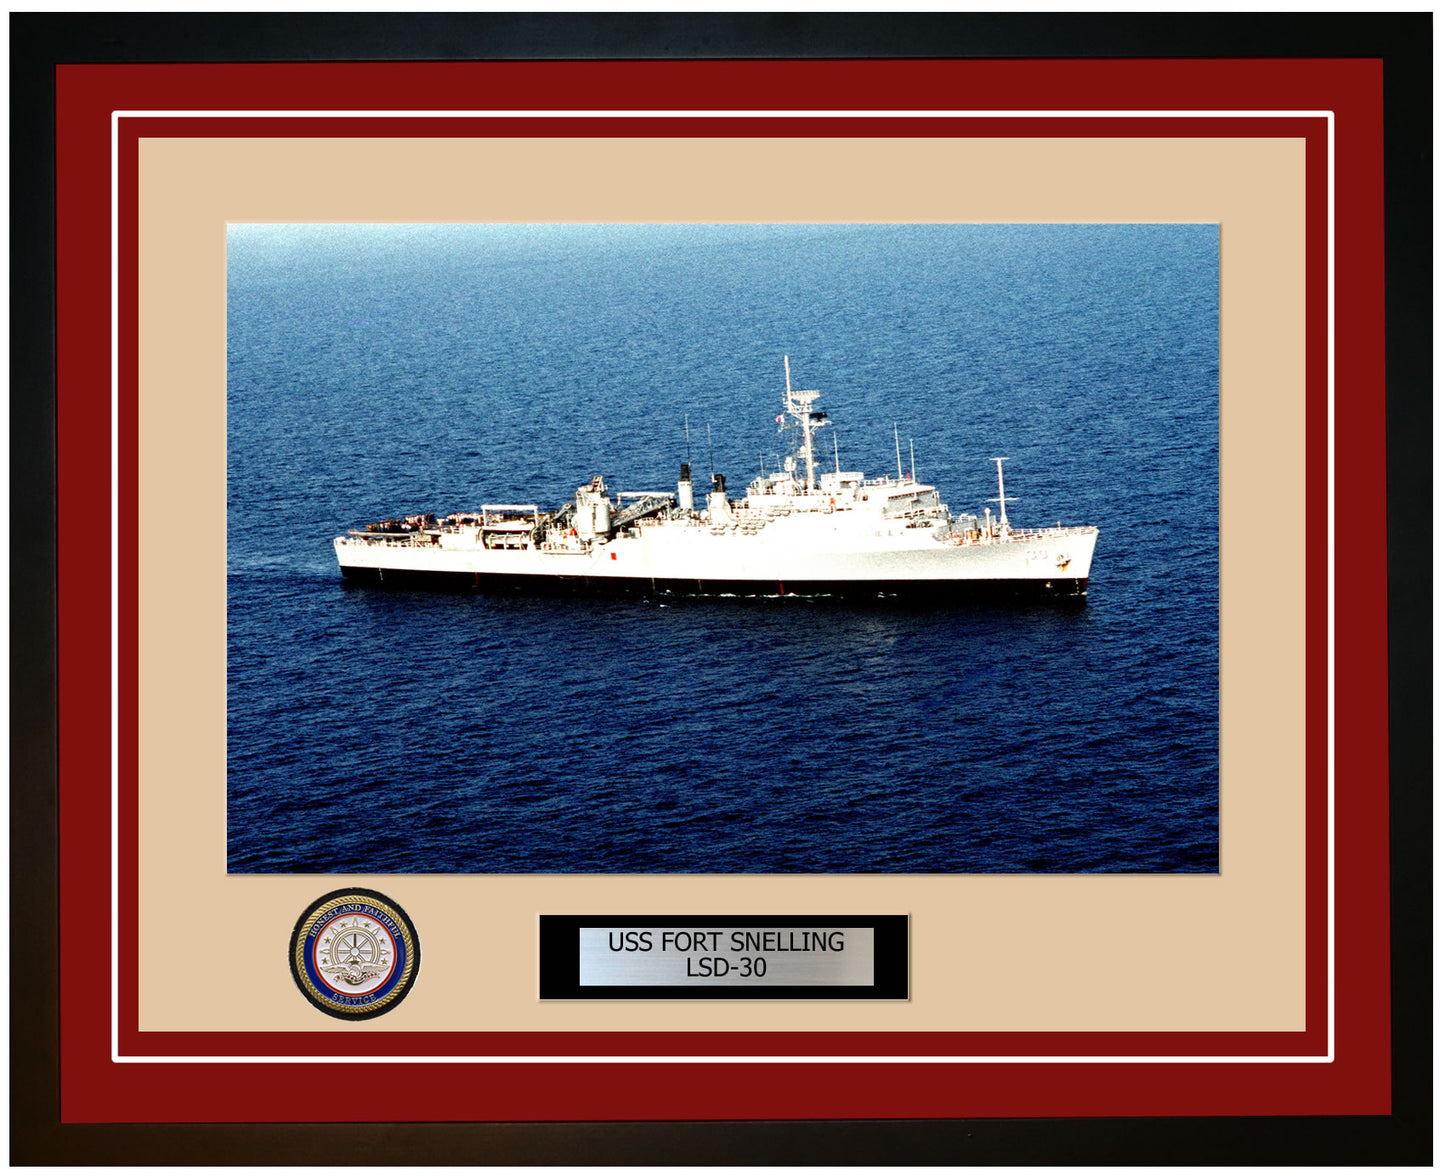 USS Fort Snelling LSD-30 Framed Navy Ship Photo Burgundy